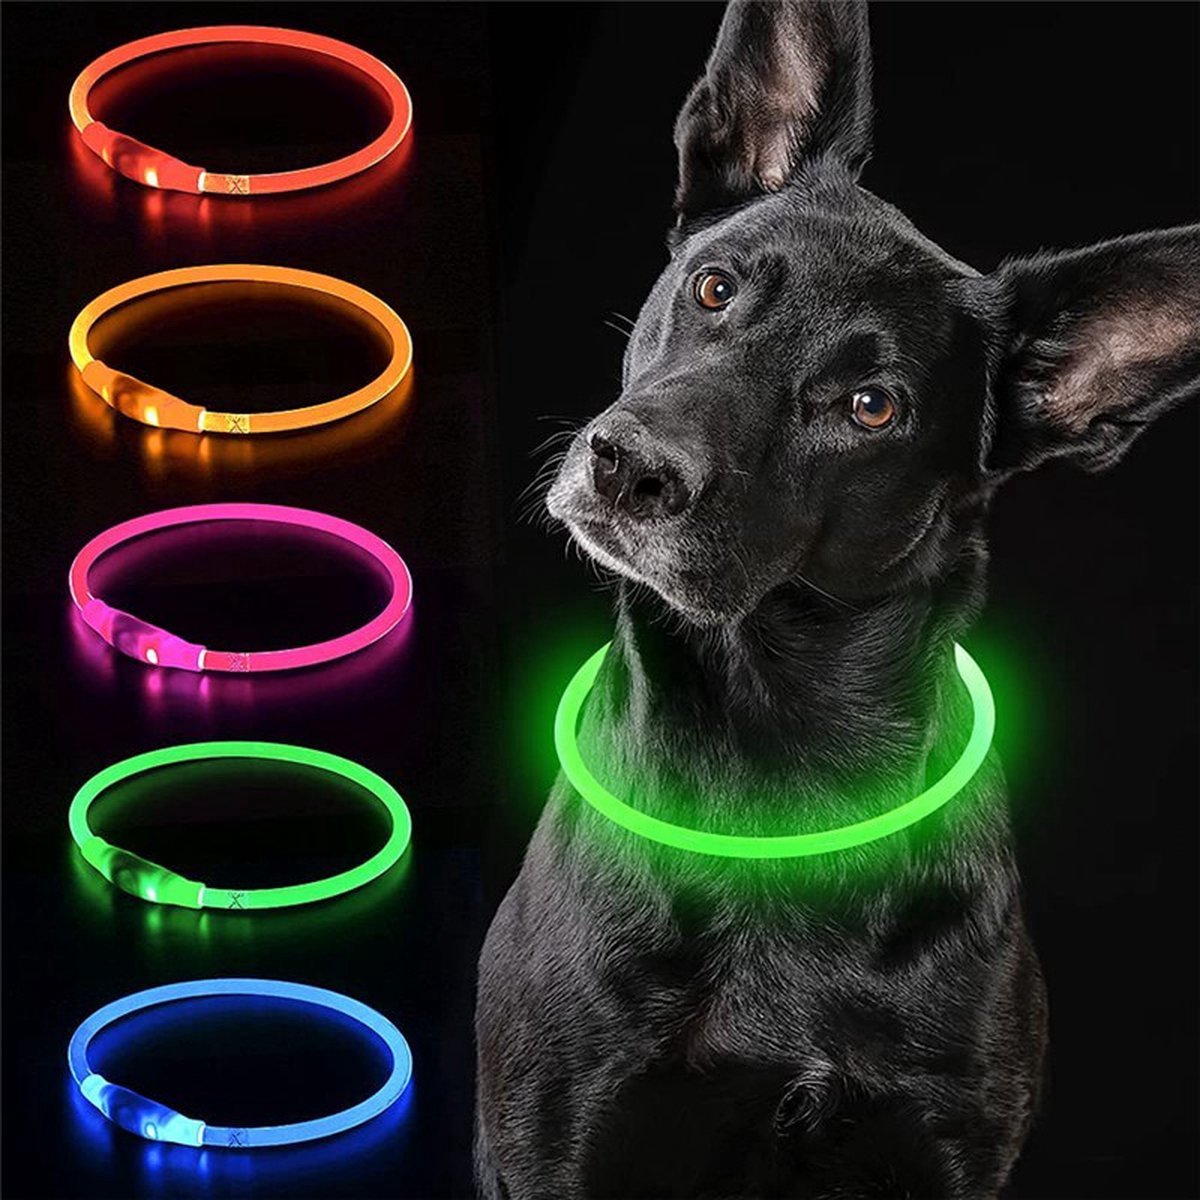 Jn Groene LED Halsband voor honden - Medium size - groen verlichte halsband - 50 cm - Graag nauwkeurig de maat opmeten! - Lichtgevende Halsband Hond - Oplaadbaar via USB - adjustable - verstelbaar - verstelbare halsband USB oplaadbaar - JN